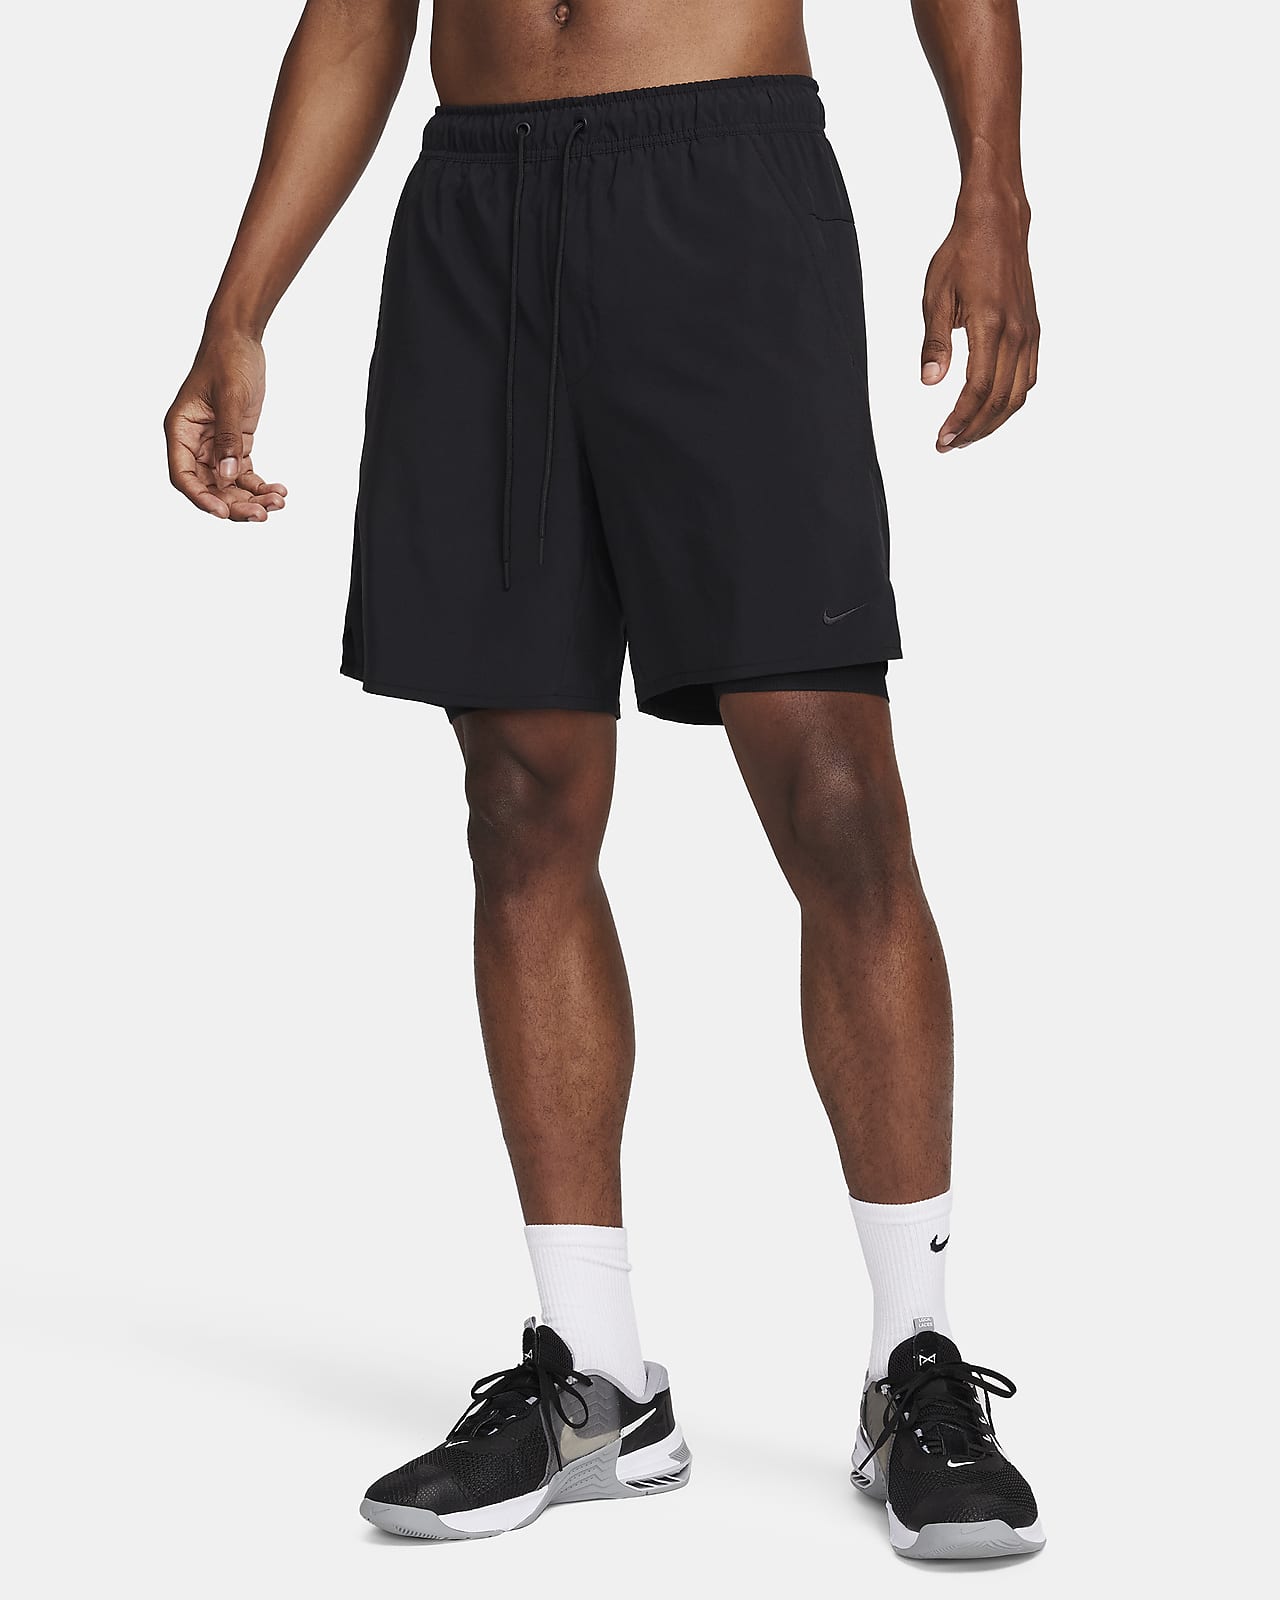 Nike Unlimited Pantalons curts versàtils 2 en 1 de 18 cm Dri-FIT - Home